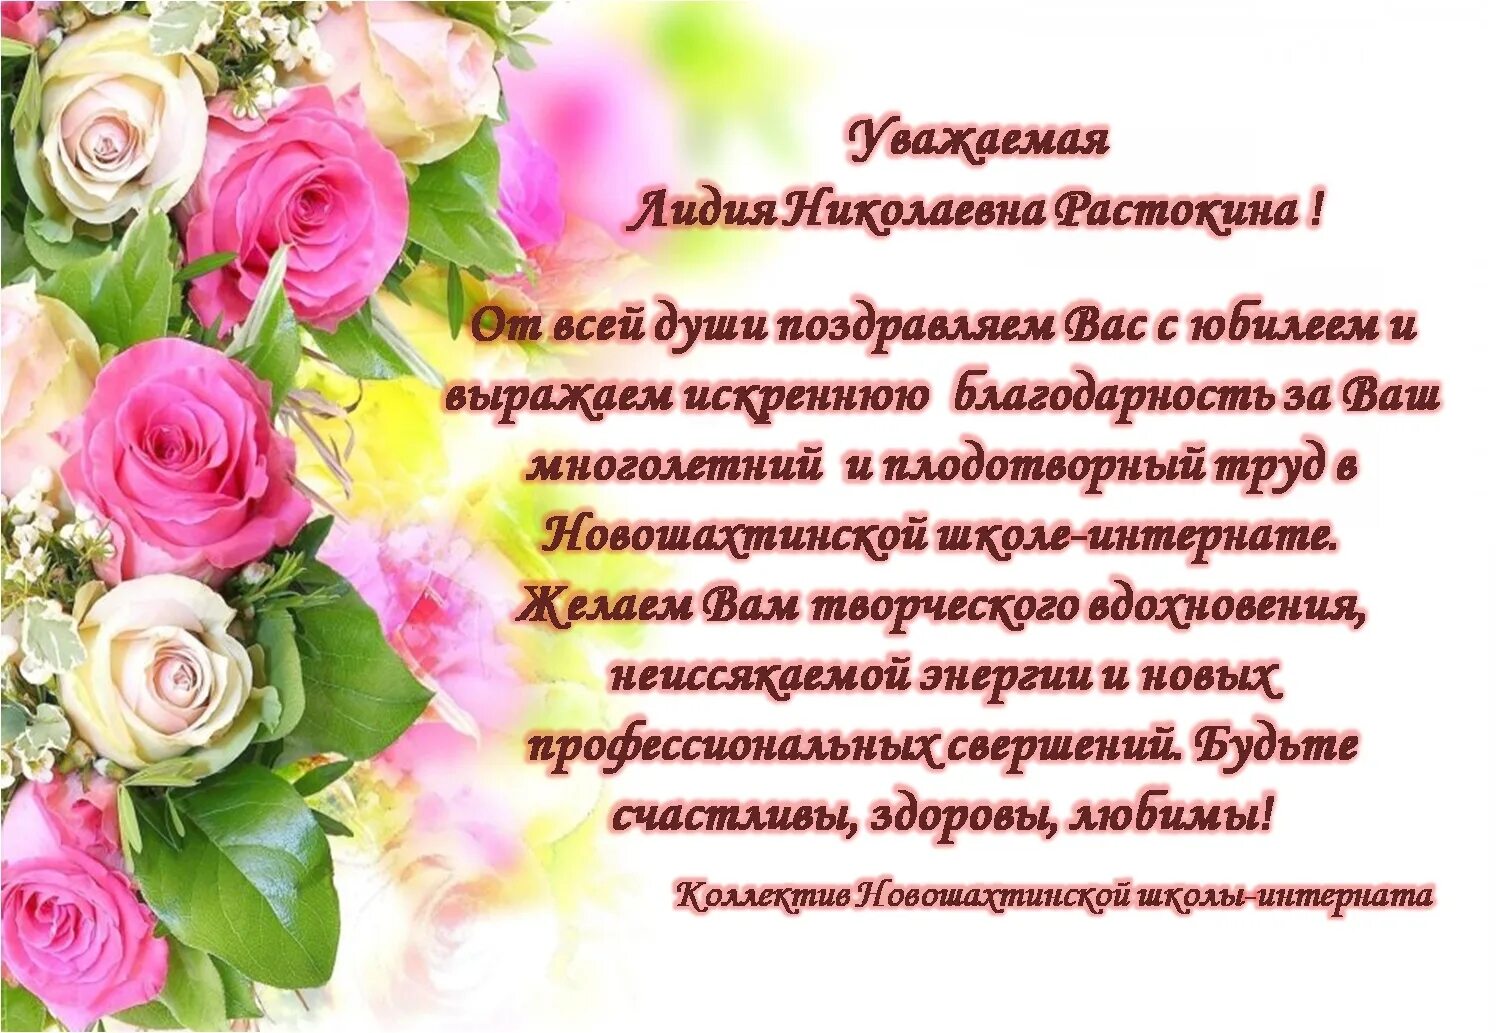 Открытки с днем рождения женщине красивые лидии. Поздравления с днём рождения Лидии Николаевне.